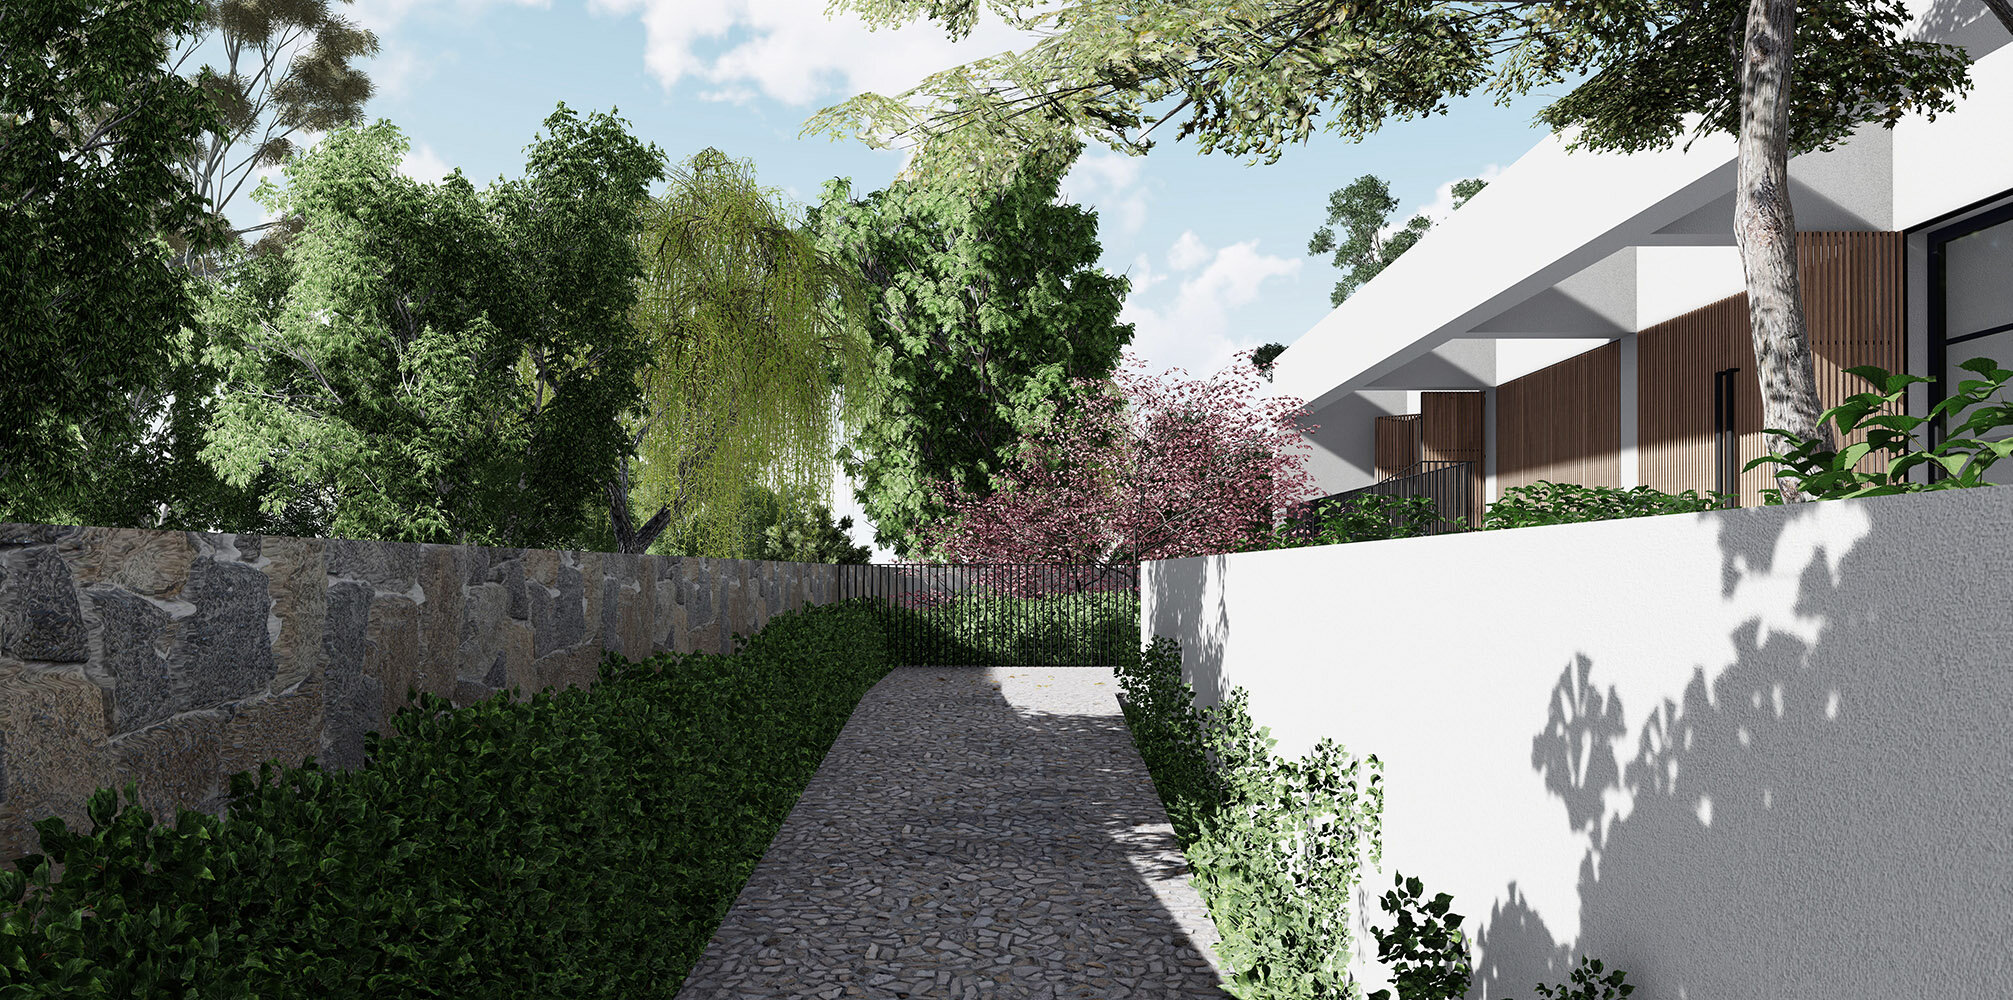 family-home-modern-stone-entrance-landscape-kensington-gardens.jpg